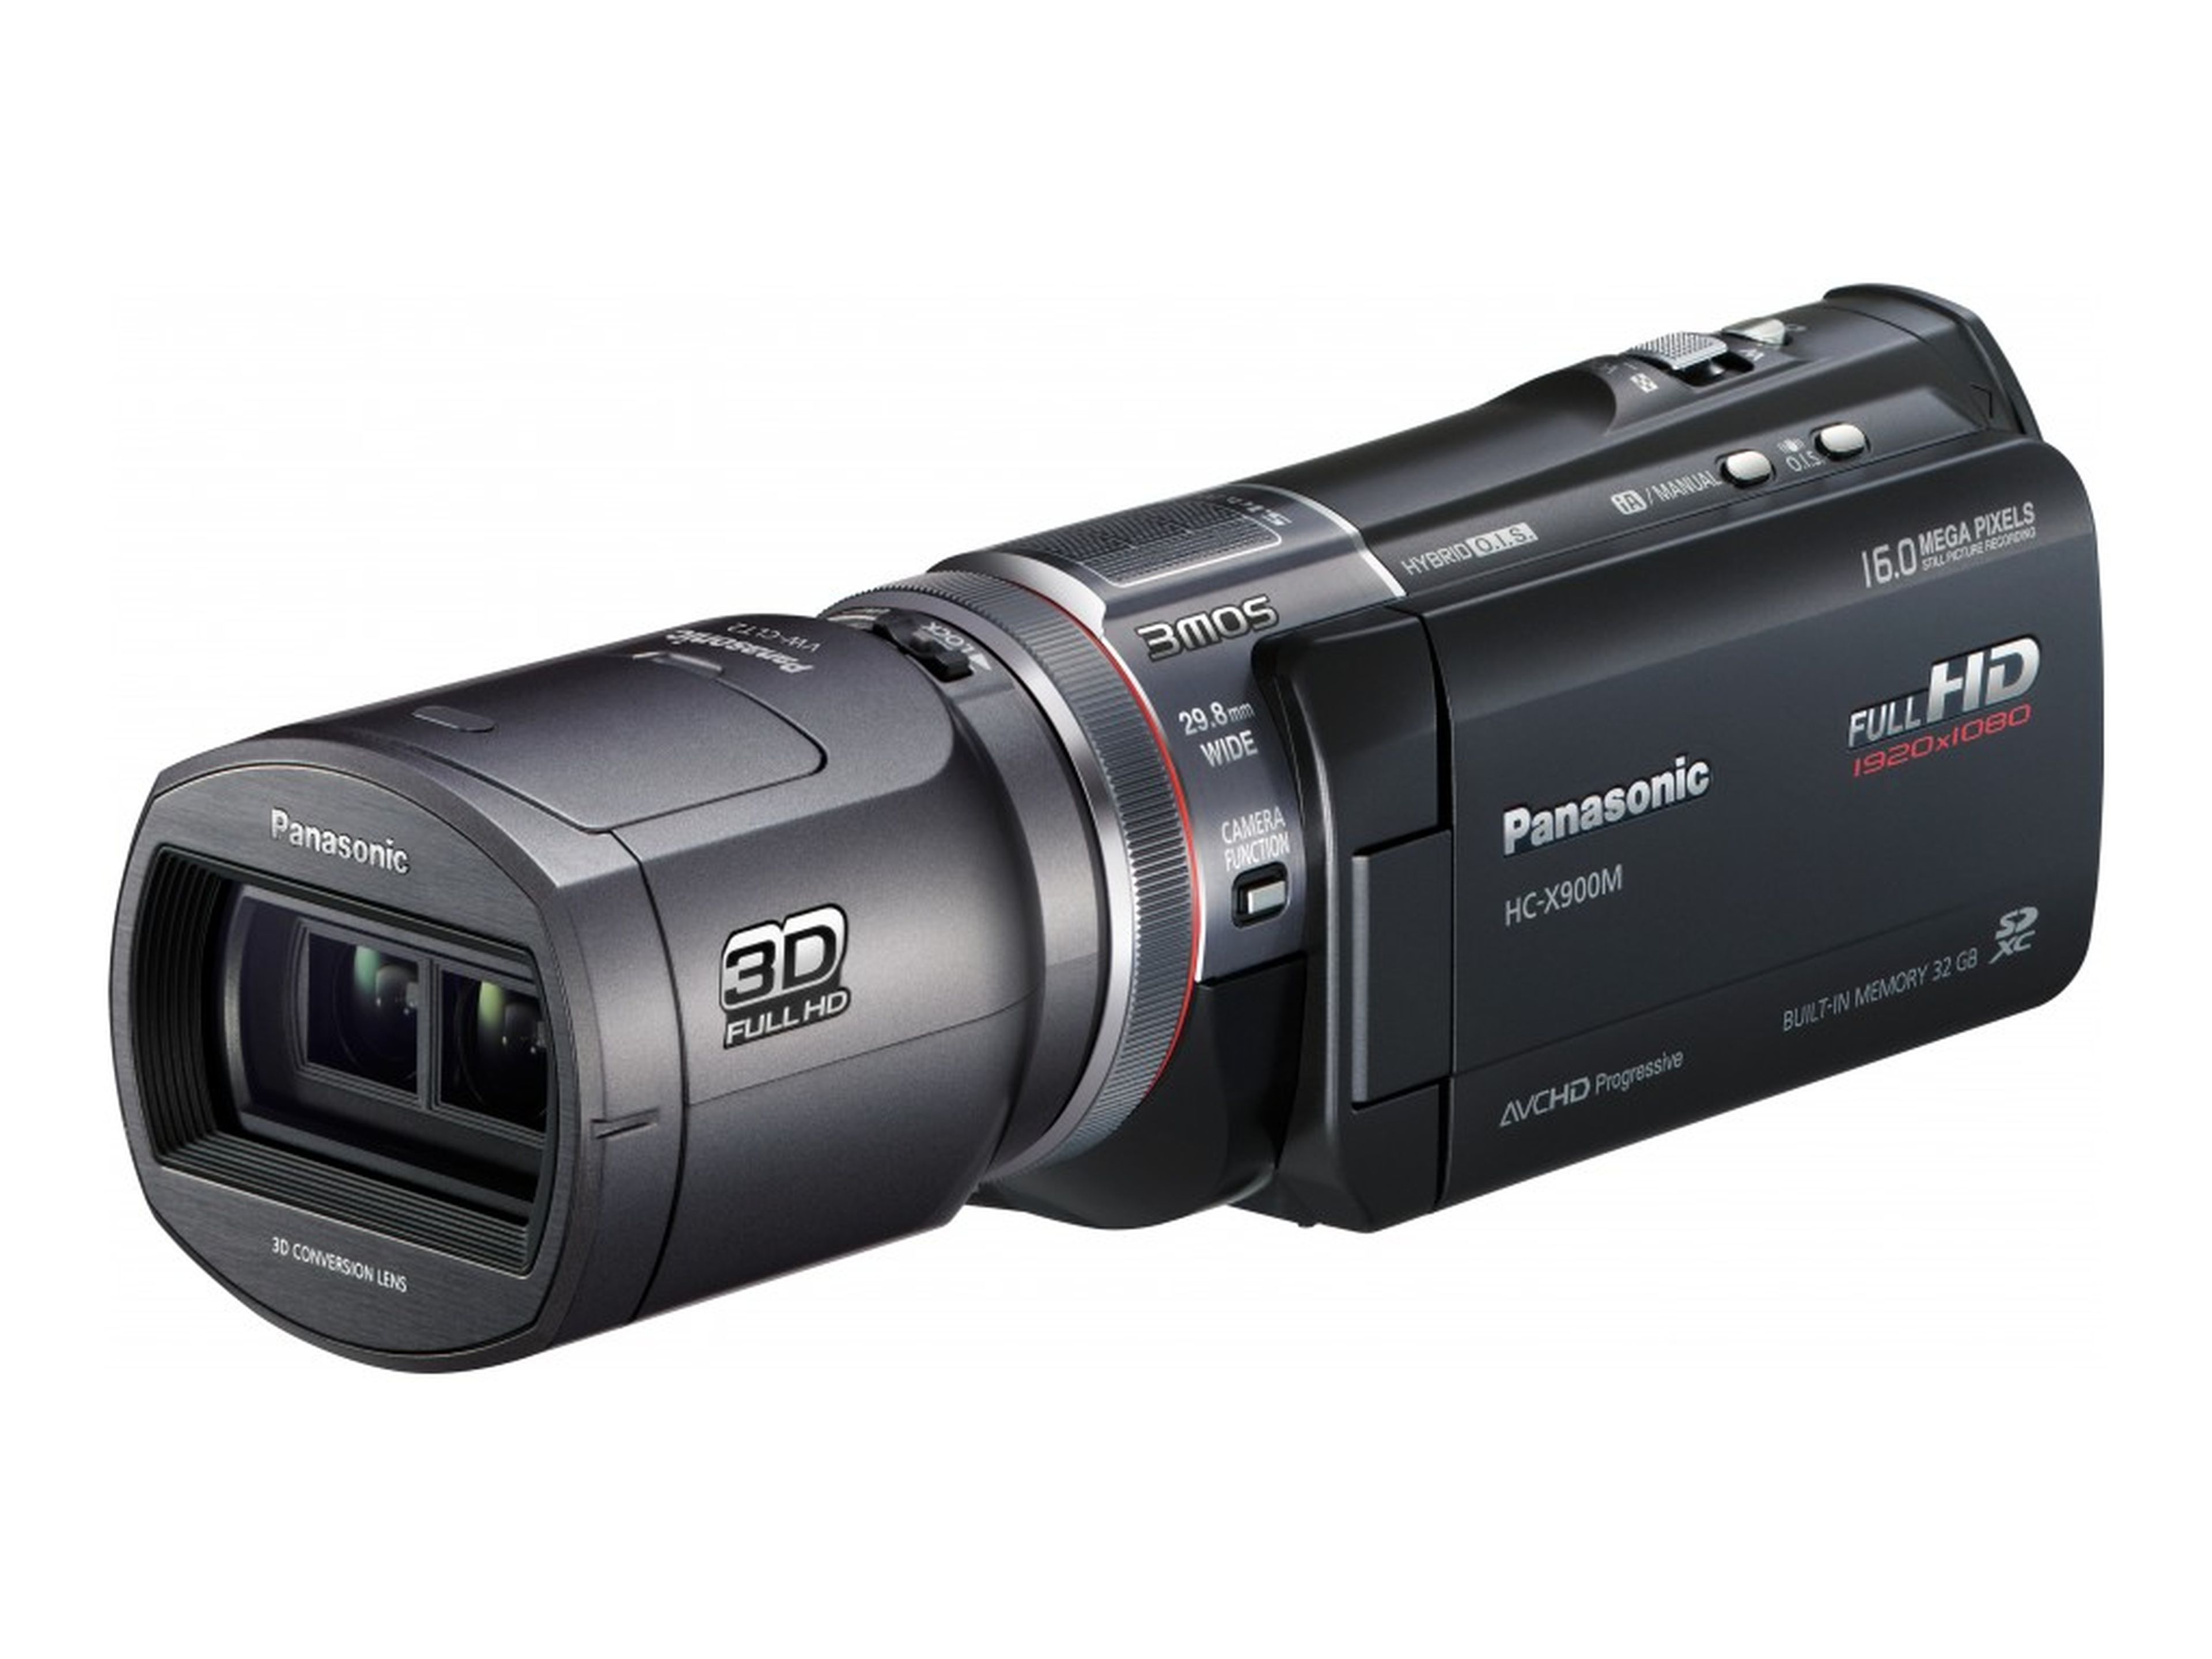 Panasonic x1500. Panasonic HC-x900. Panasonic x900 видеокамера. Panasonic HC-x900, HC-x900m. Panasonic 900 видеокамера.